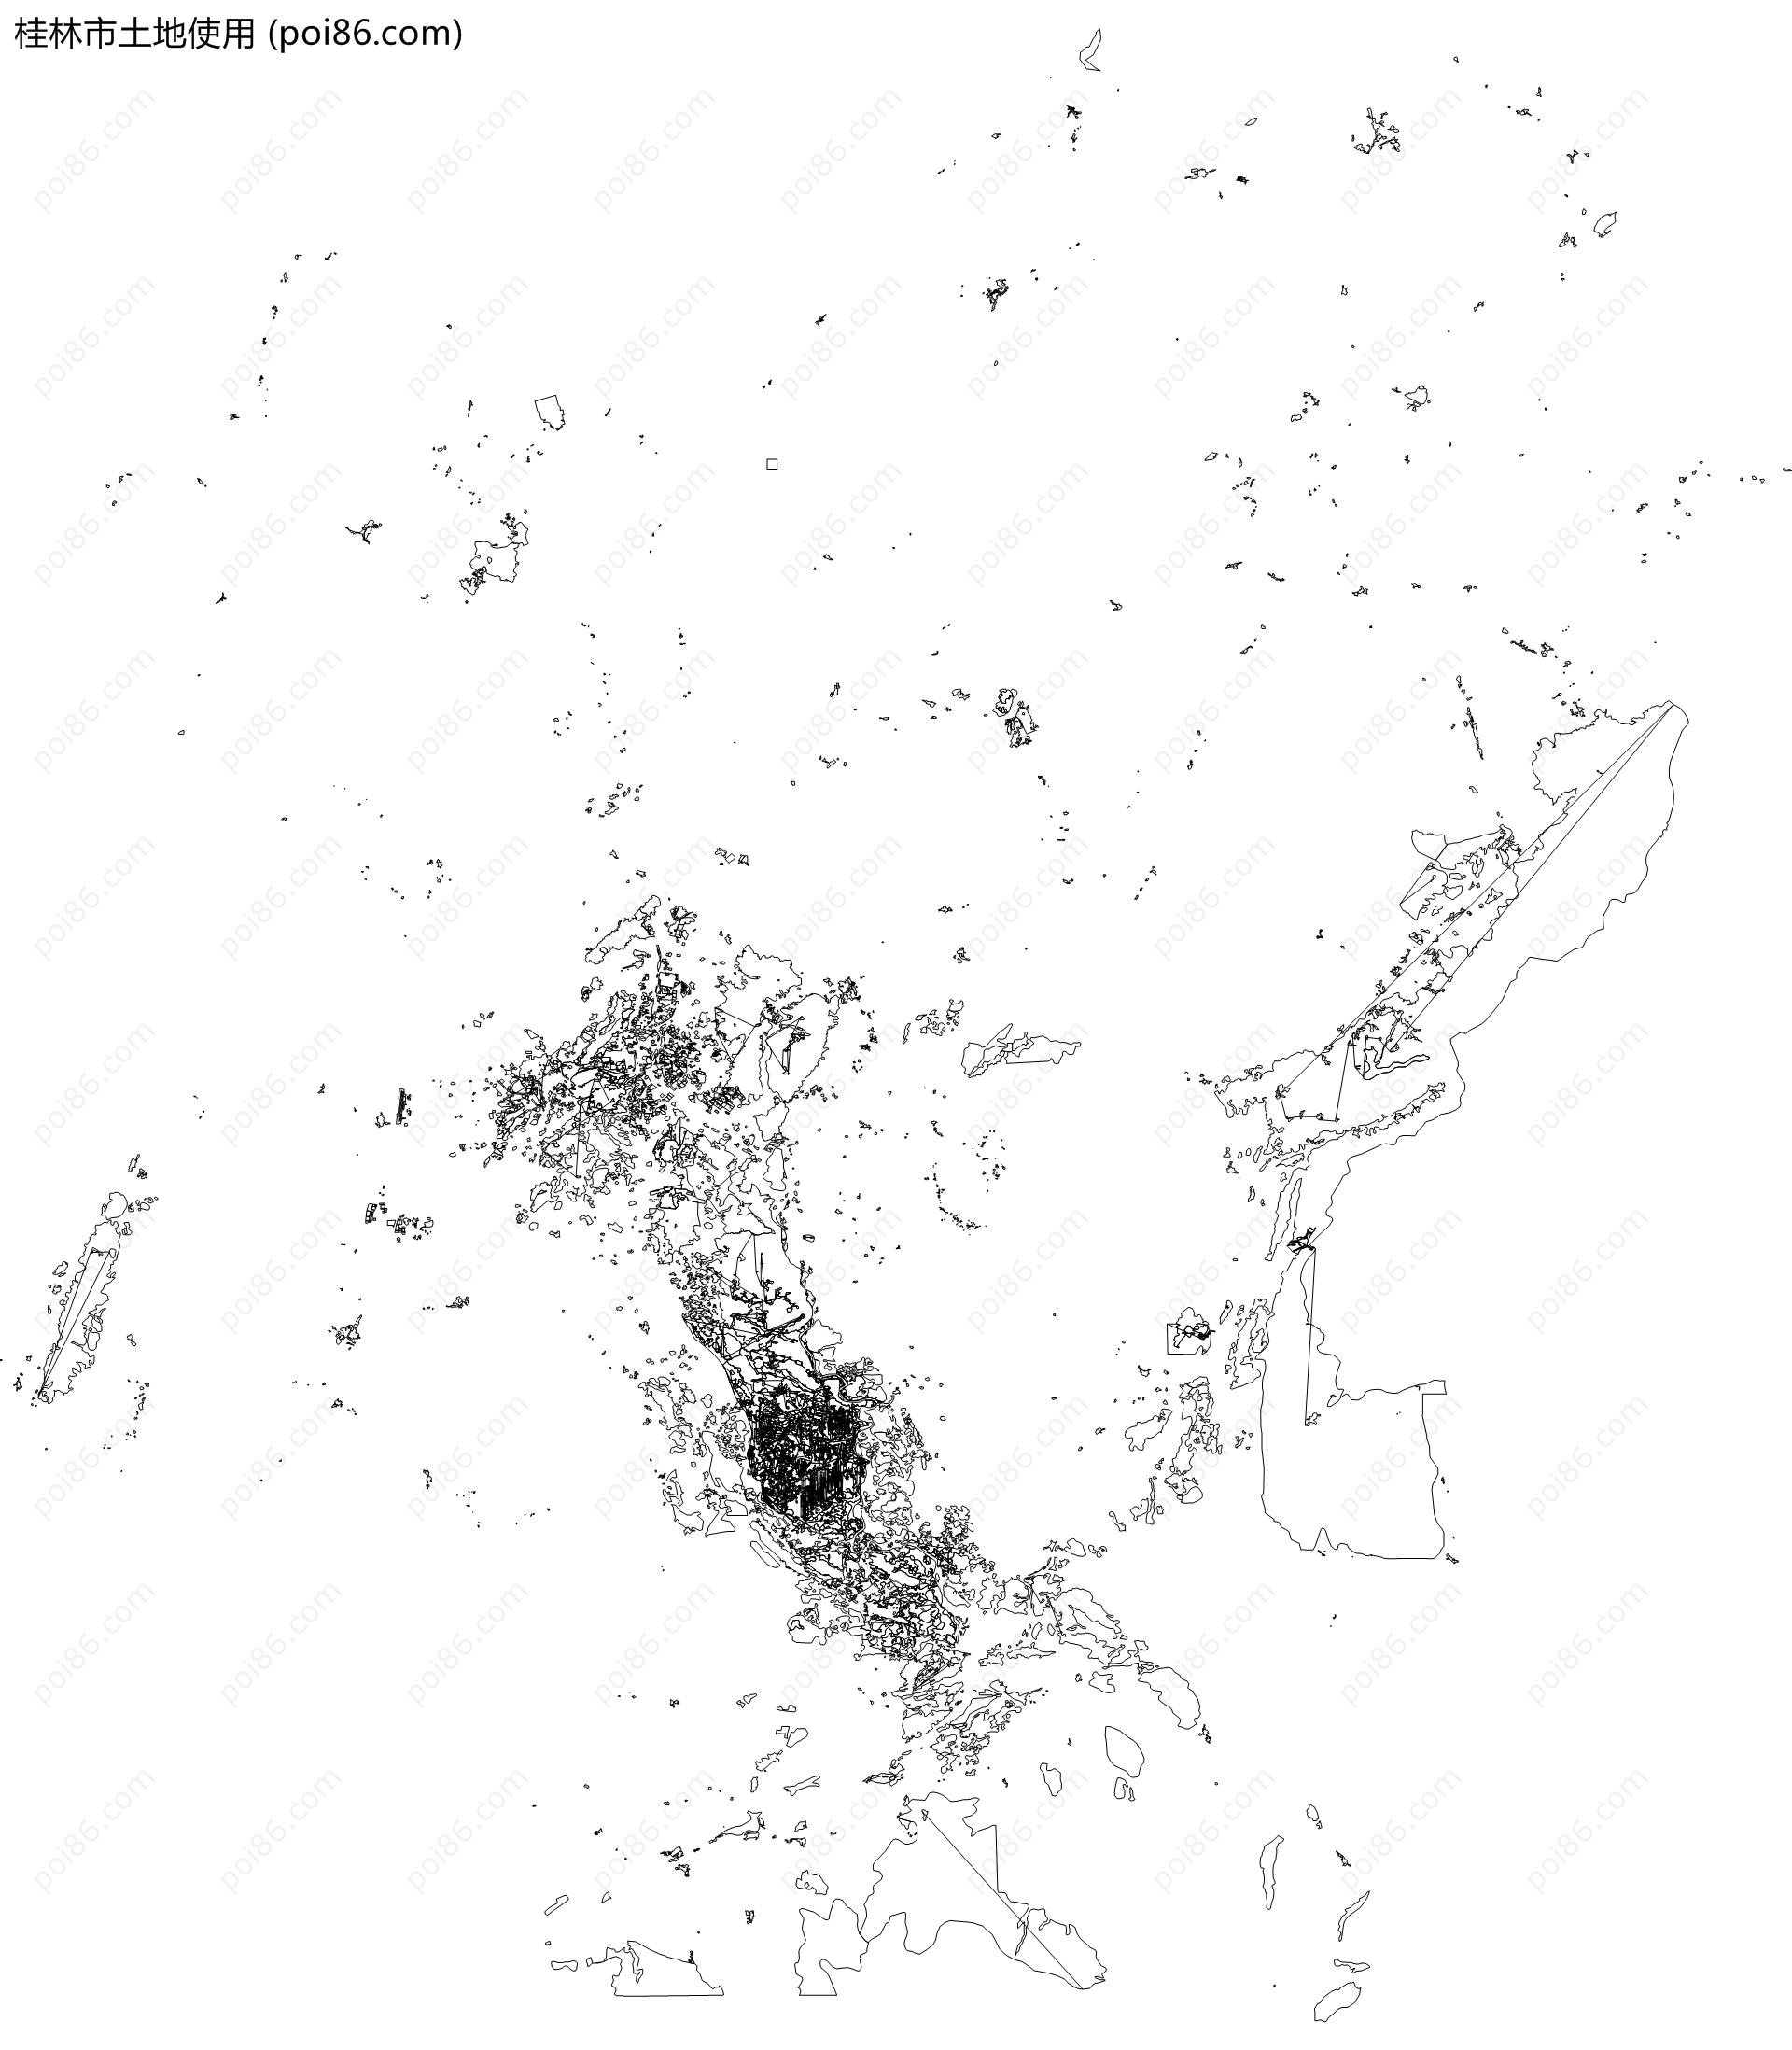 桂林市土地使用地图